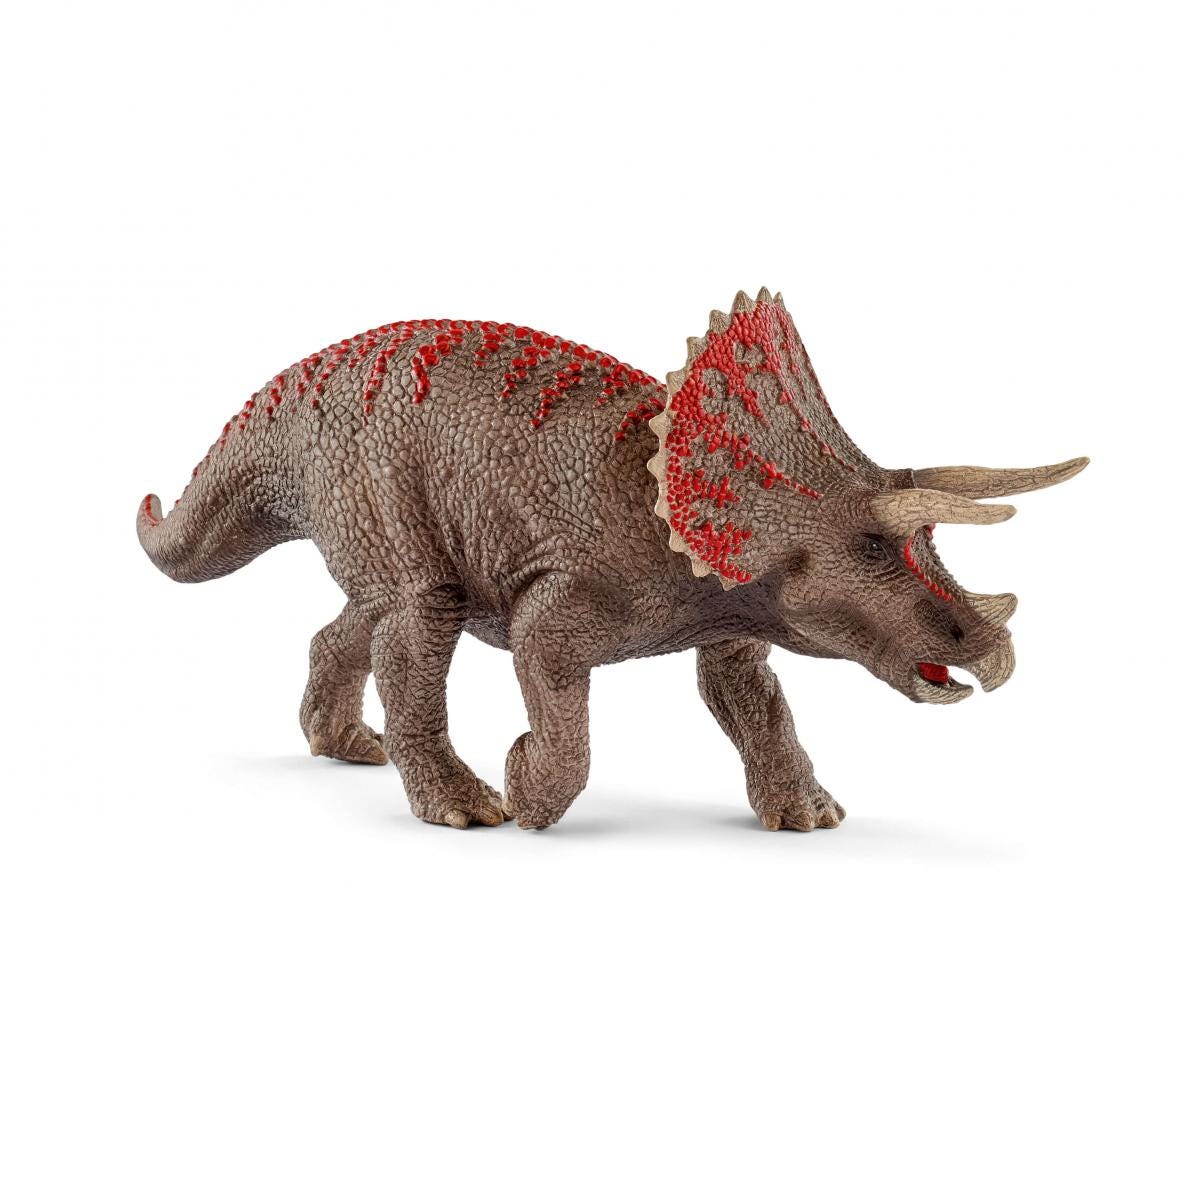 Schleich Dinosaurs Triceratops 15000 NEW 